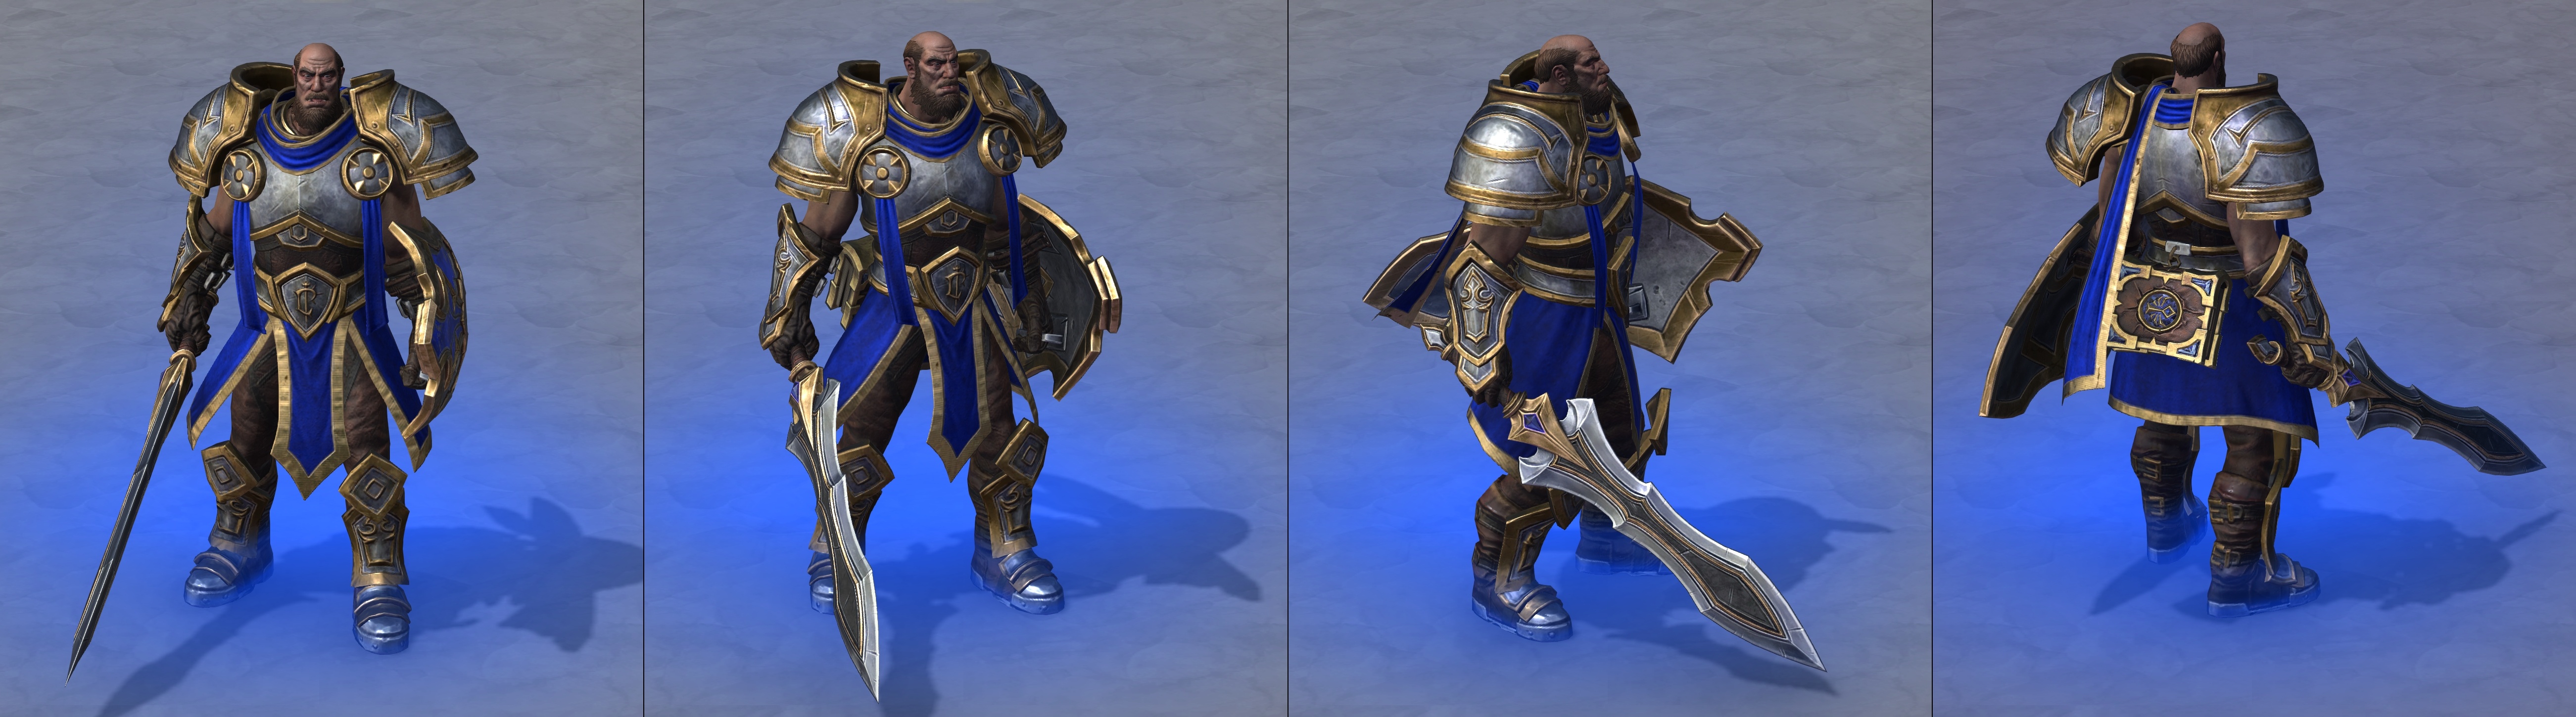 Warcraft III Reforged : Sir Gregory Edmunson